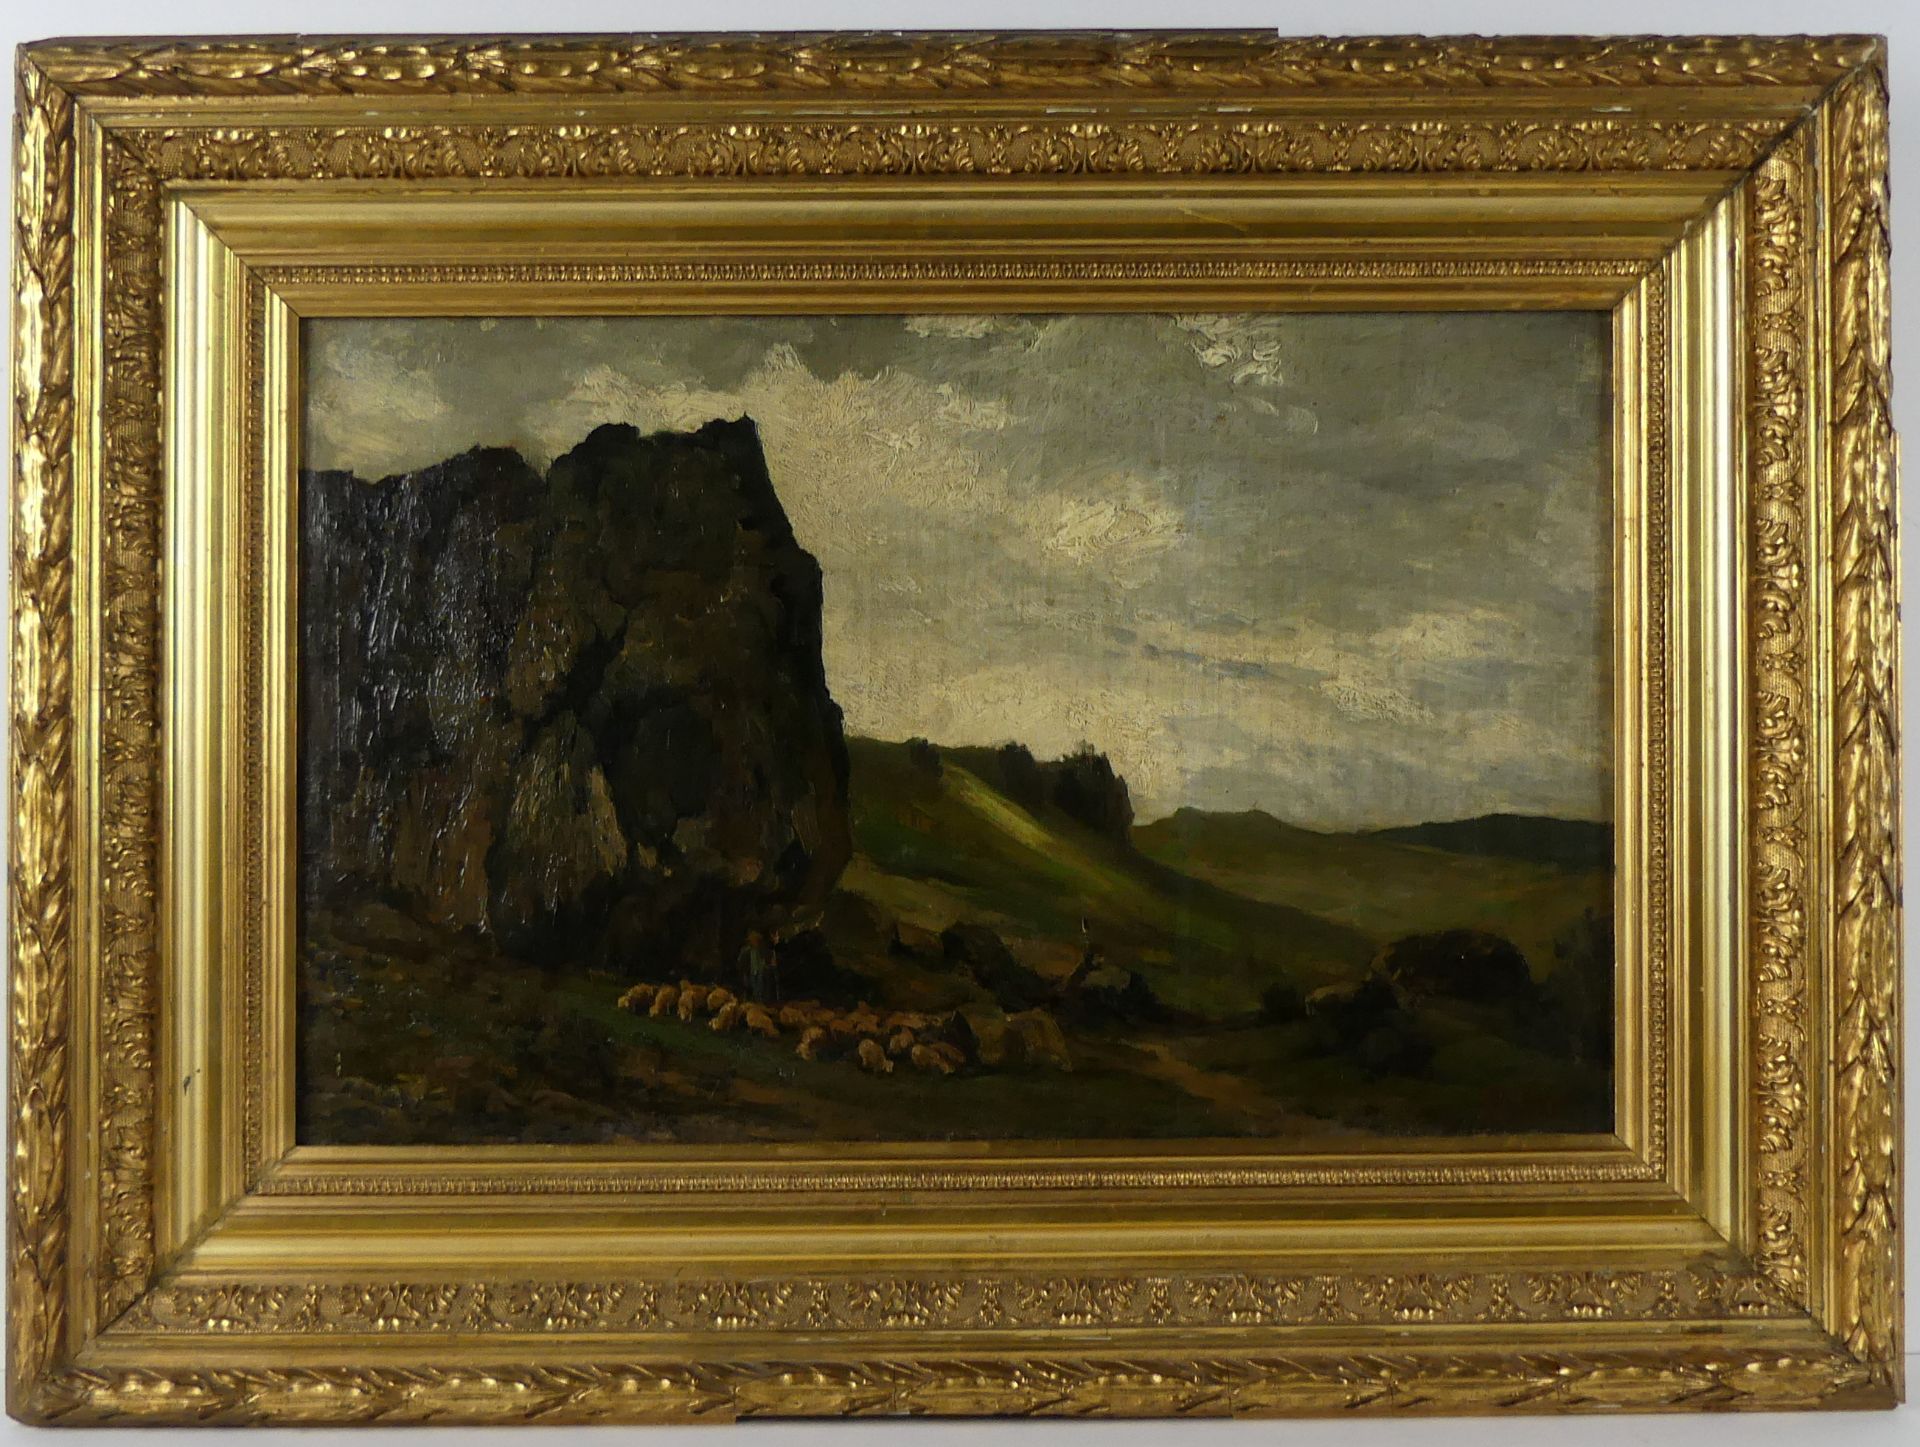 HERMANN POHLE d. Ä. (1863-1914 Düsseldorf), "Landschaft mit Schafen",